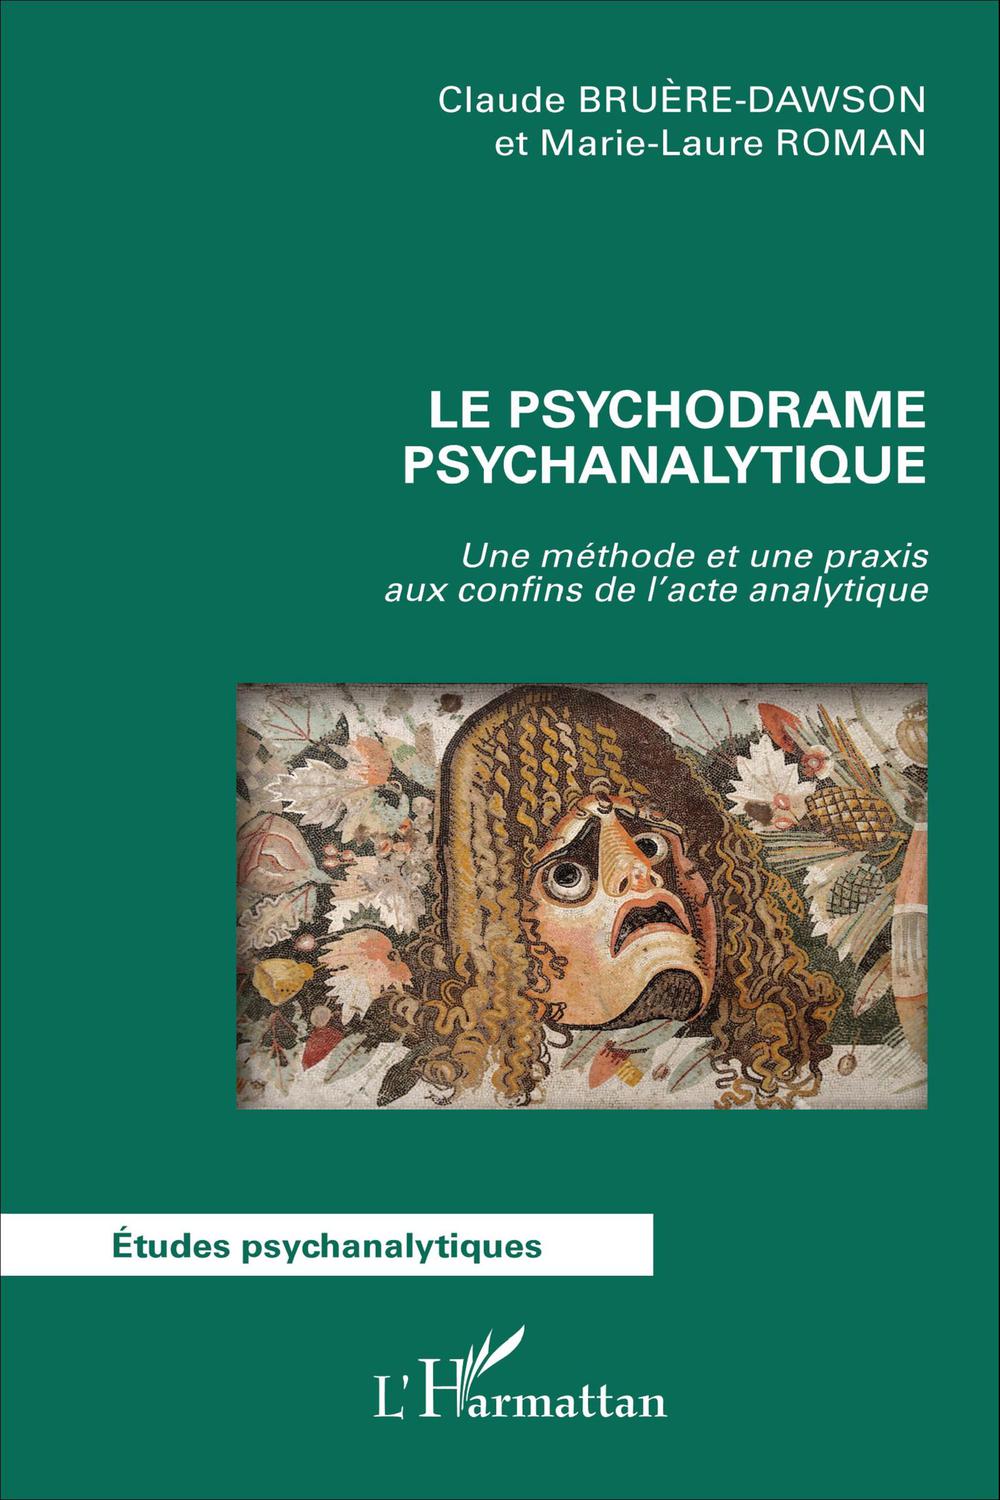 Le psychodrame psychanalytique - Claude Bruère-Dawson, Marie-Laure Roman